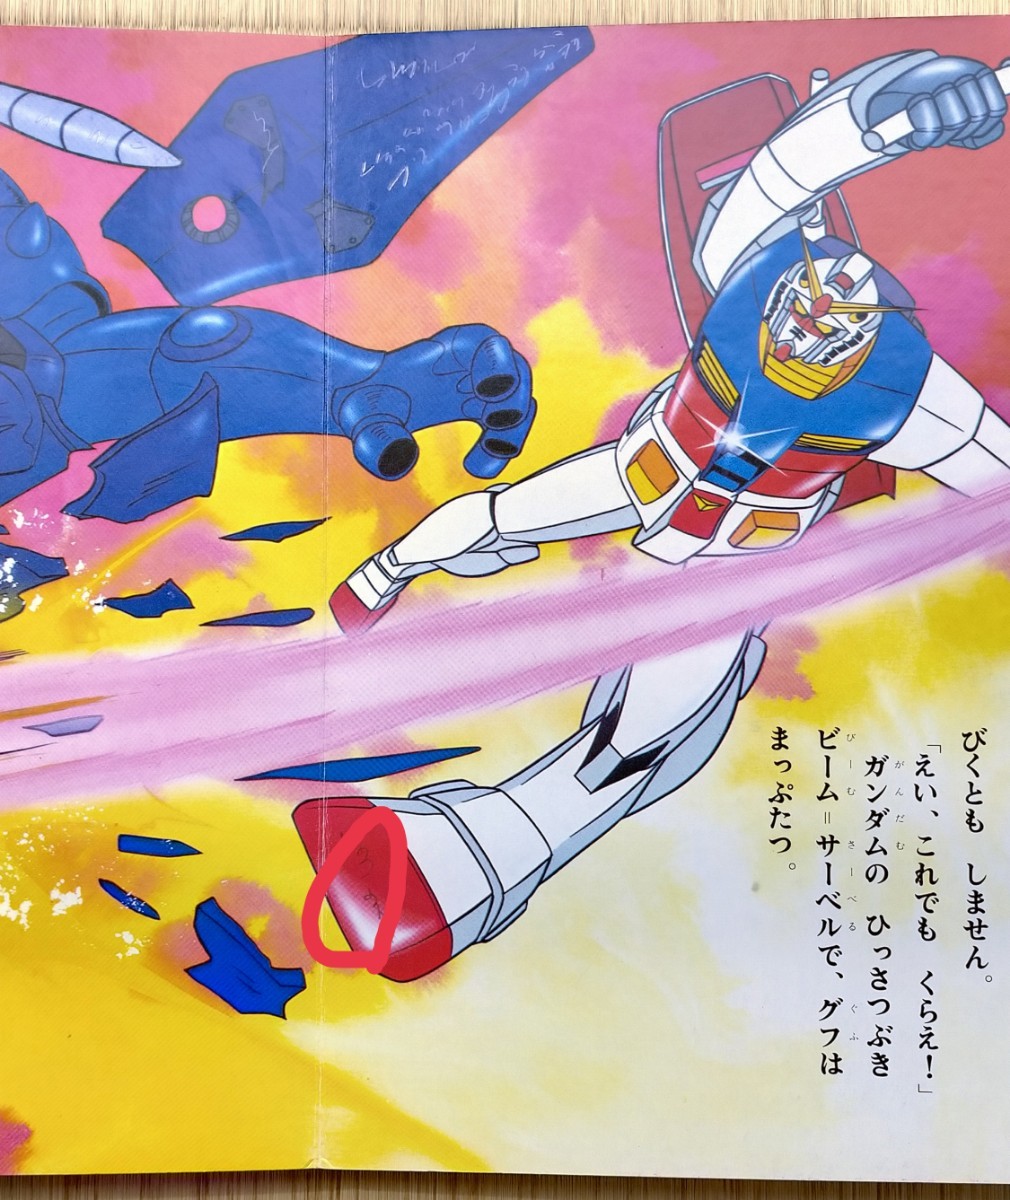  книга с картинками поразительный .! Mobile Suit Gundam веселый детский сад. телевизор книга с картинками 33 прекрасный товар Showa Retro Showa .. фирма gundam Gundam веселый детский сад ...